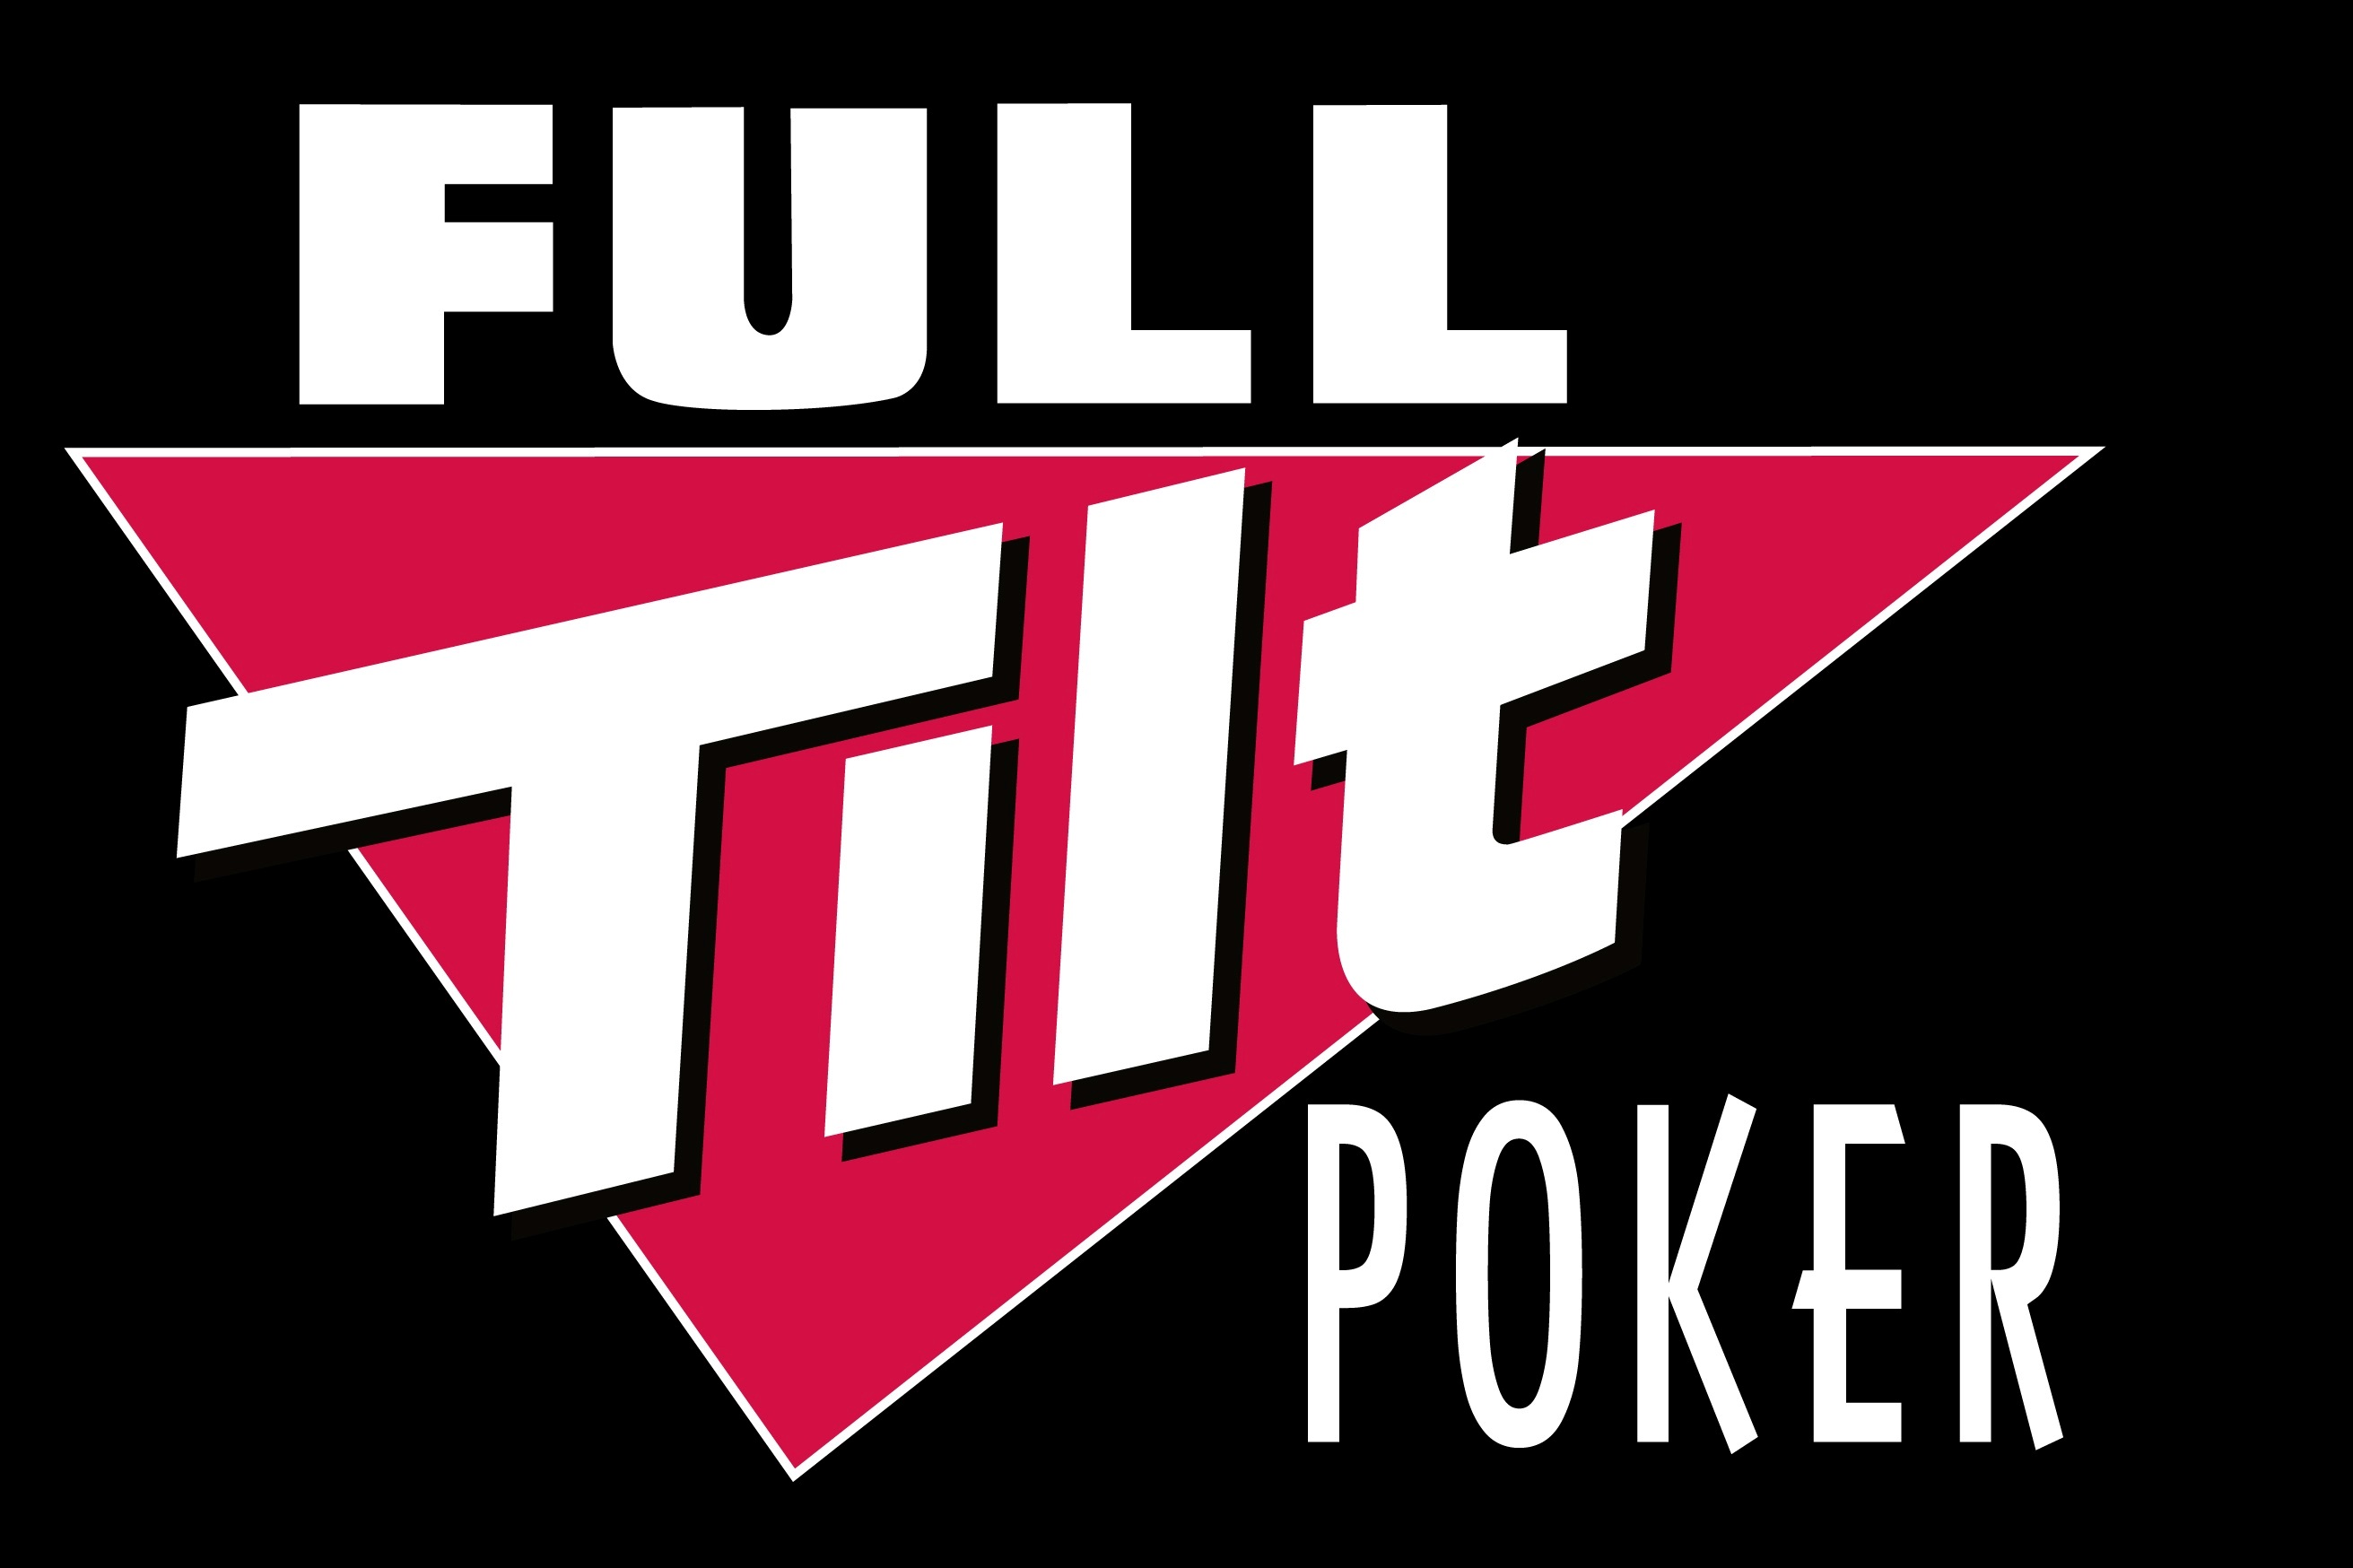 Full tilt poker online